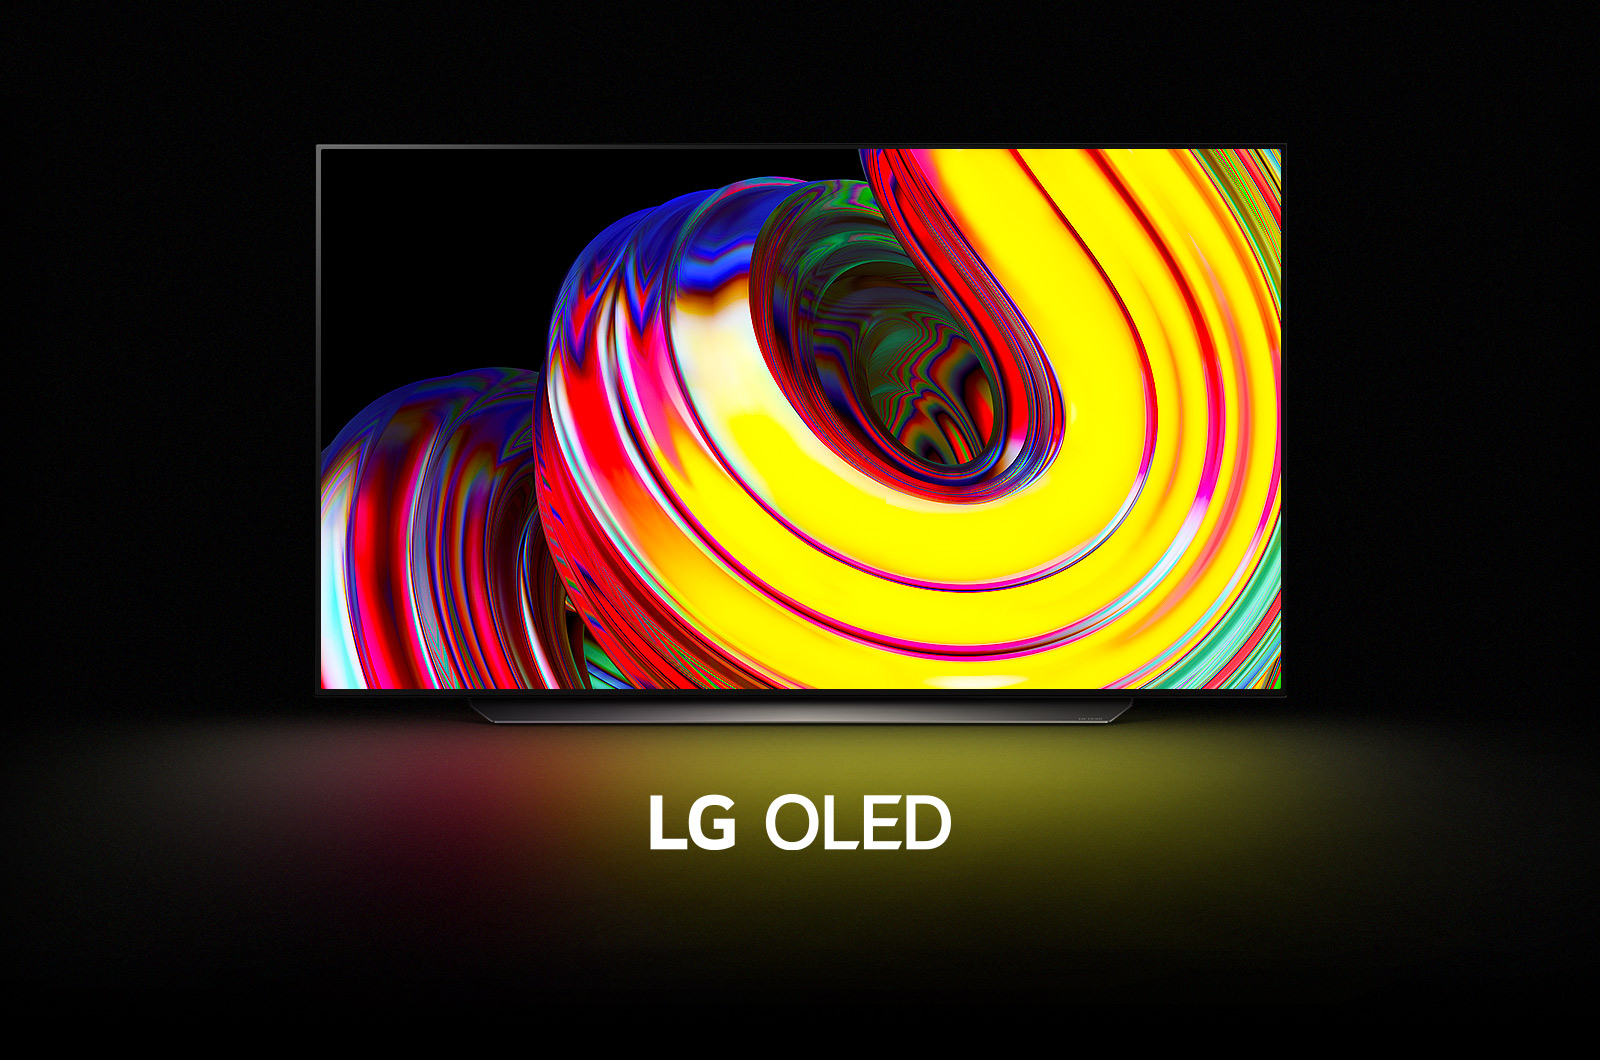 يملأ نمط الموجة المجردة الصفراء الشاشة ثم يضمحل تدريجياً ليكشف عن تلفزيون OLED CS من إل جي. تتحول الشاشة إلى اللون الأسود ثم تعرض نمط الموجة مرة أخرى مع ظهور كلمات "LG OLED" أسفلها.